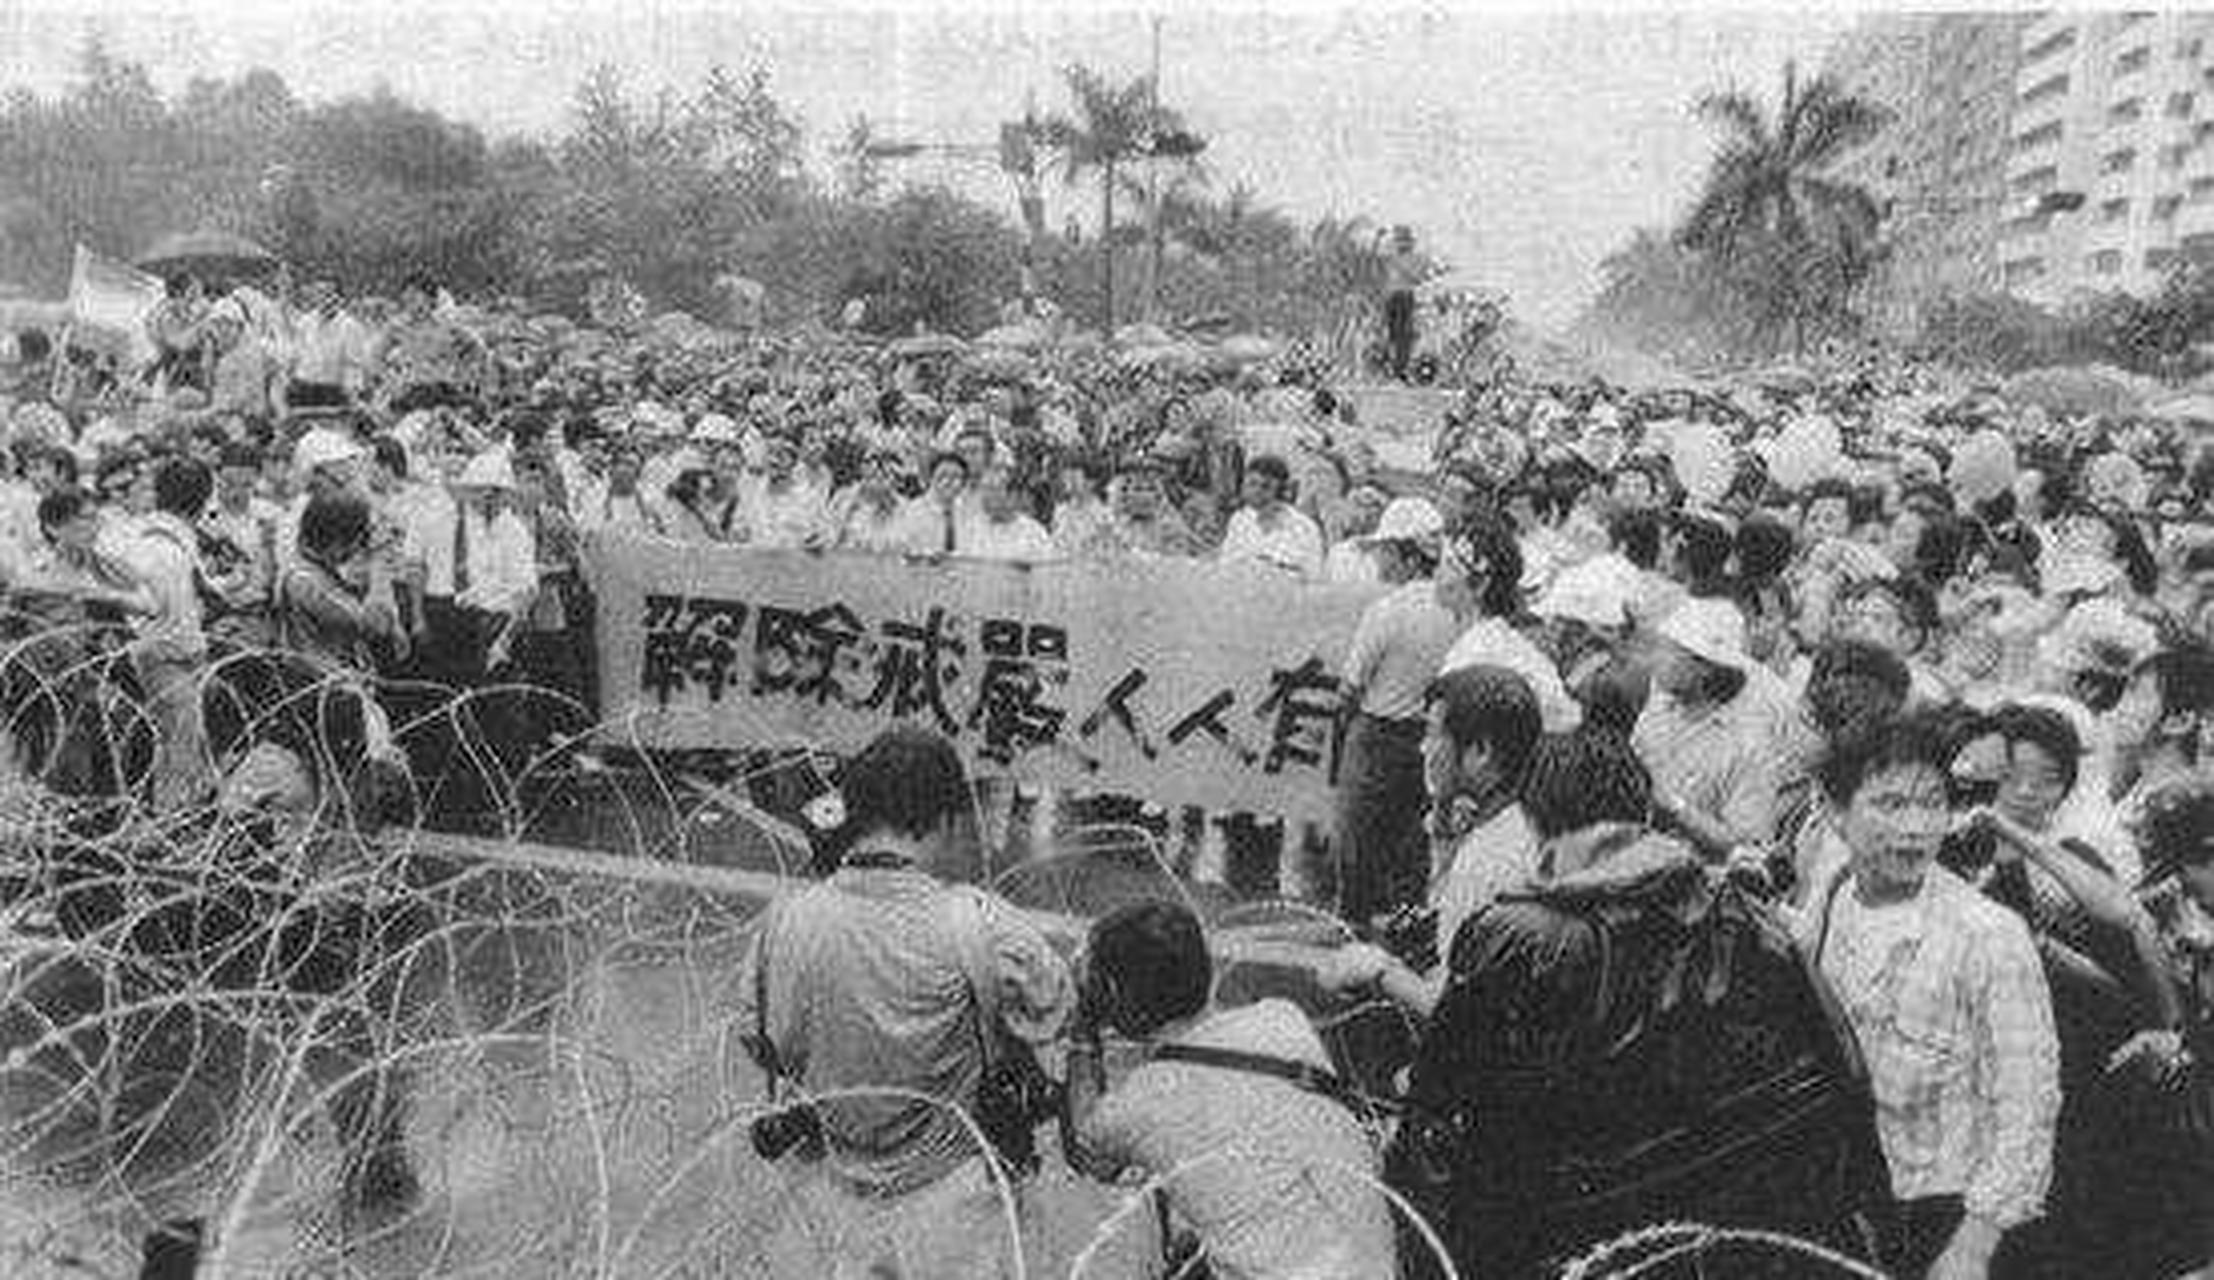 1949年5月19日,陈诚颁布《台湾省戒严令:自5月20日零时起在台湾全盛